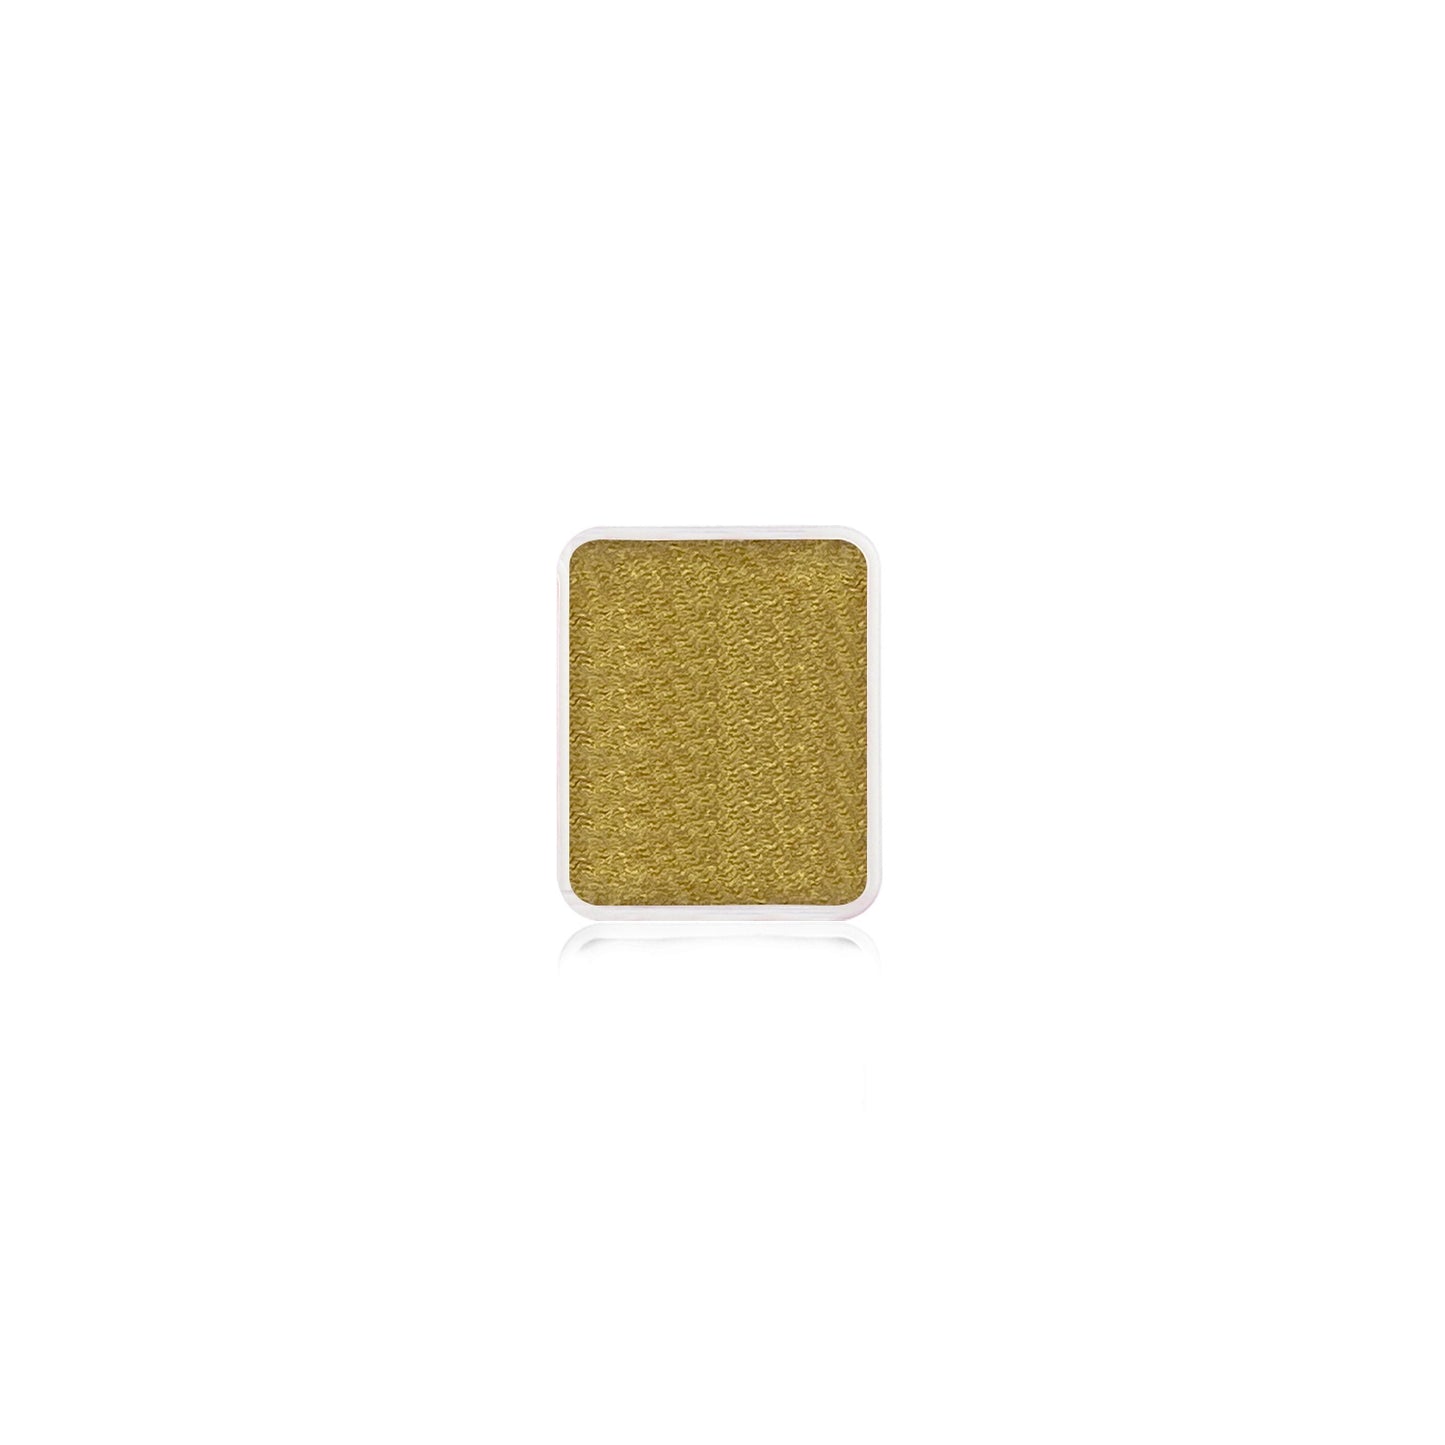 Kraze FX Face Paint Refill - Gold  (6 gm)